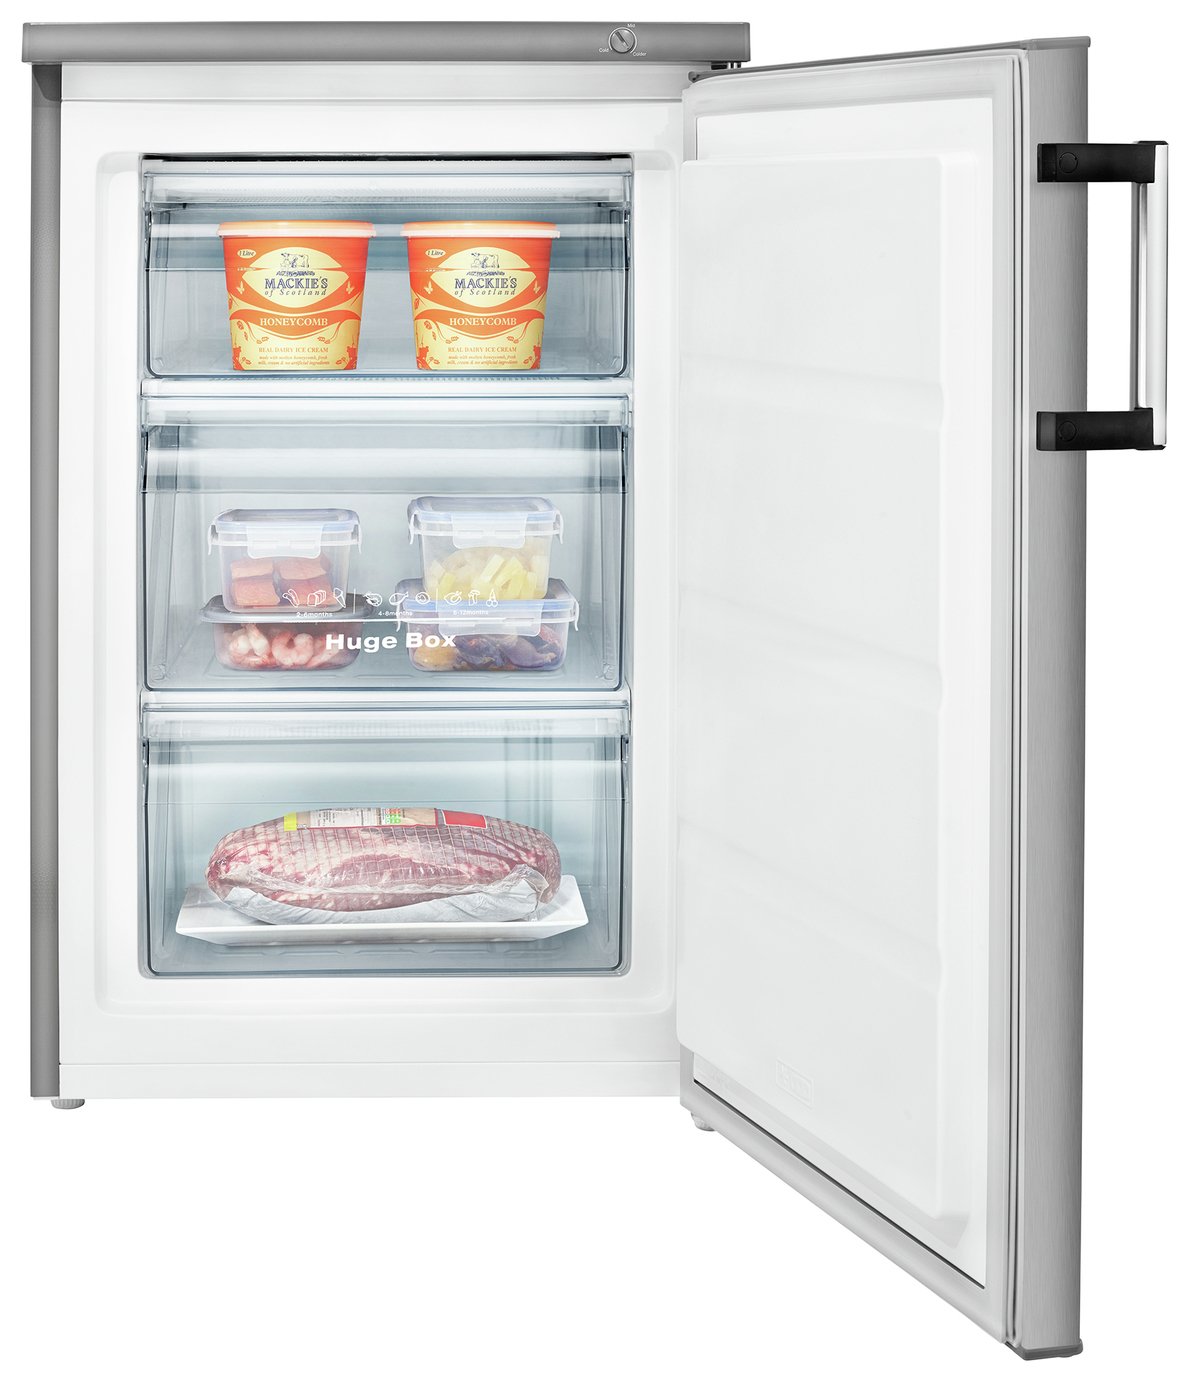 Hisense FV105D4BC21 Under Counter Freezer Review